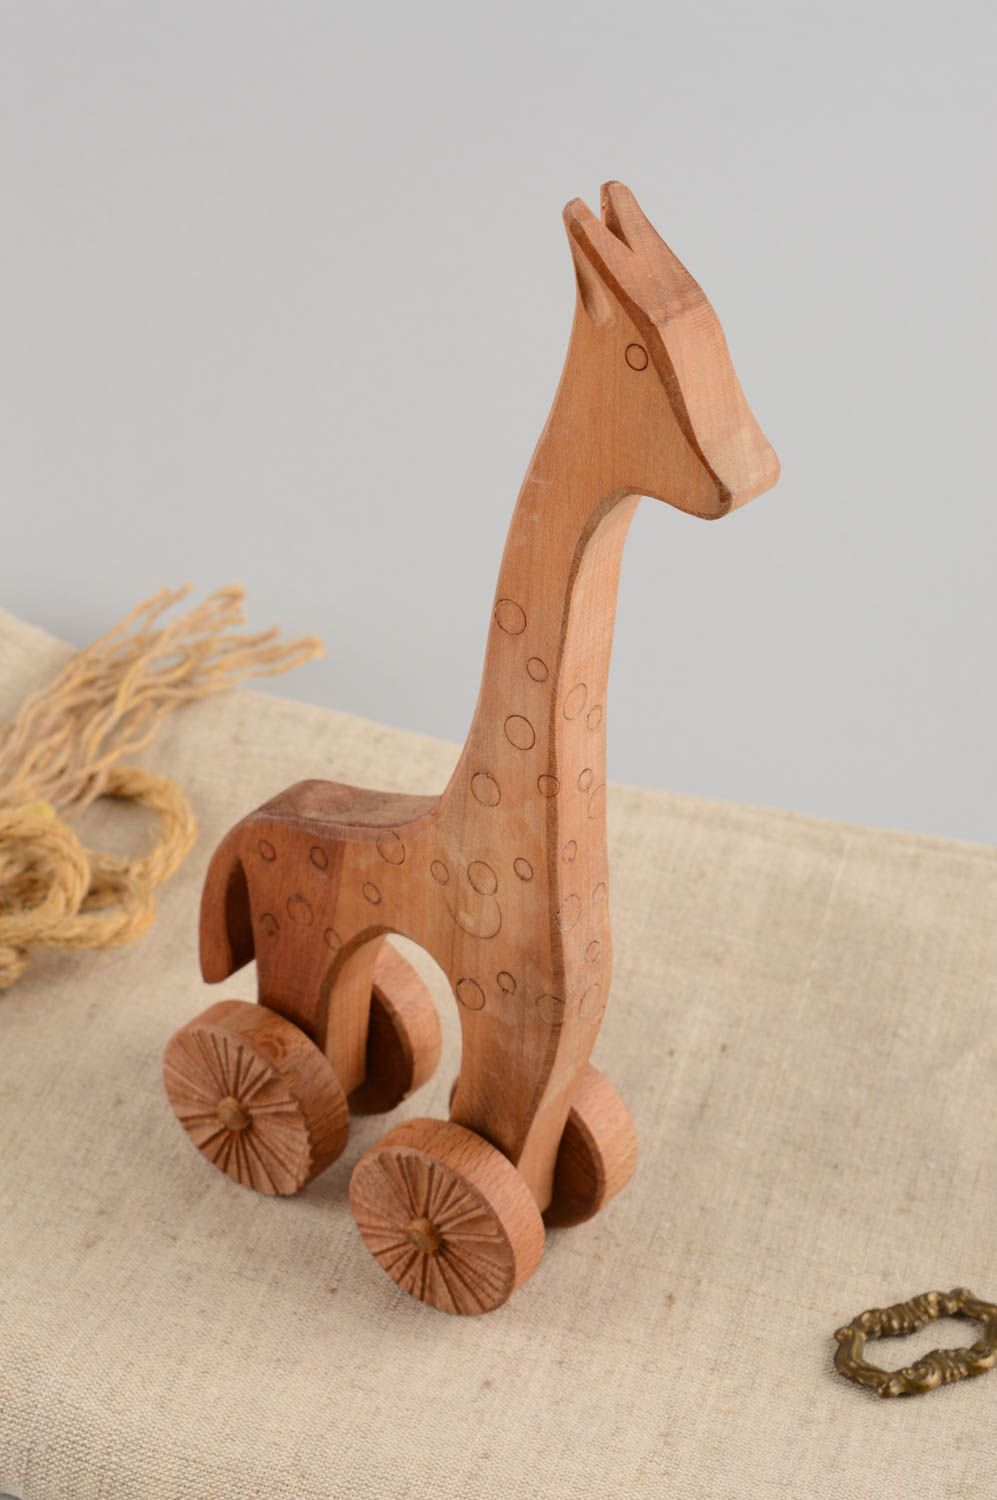 Статуэтка из дерева игрушка в виде жирафа ручной работы натуральная оригинальная фото 1